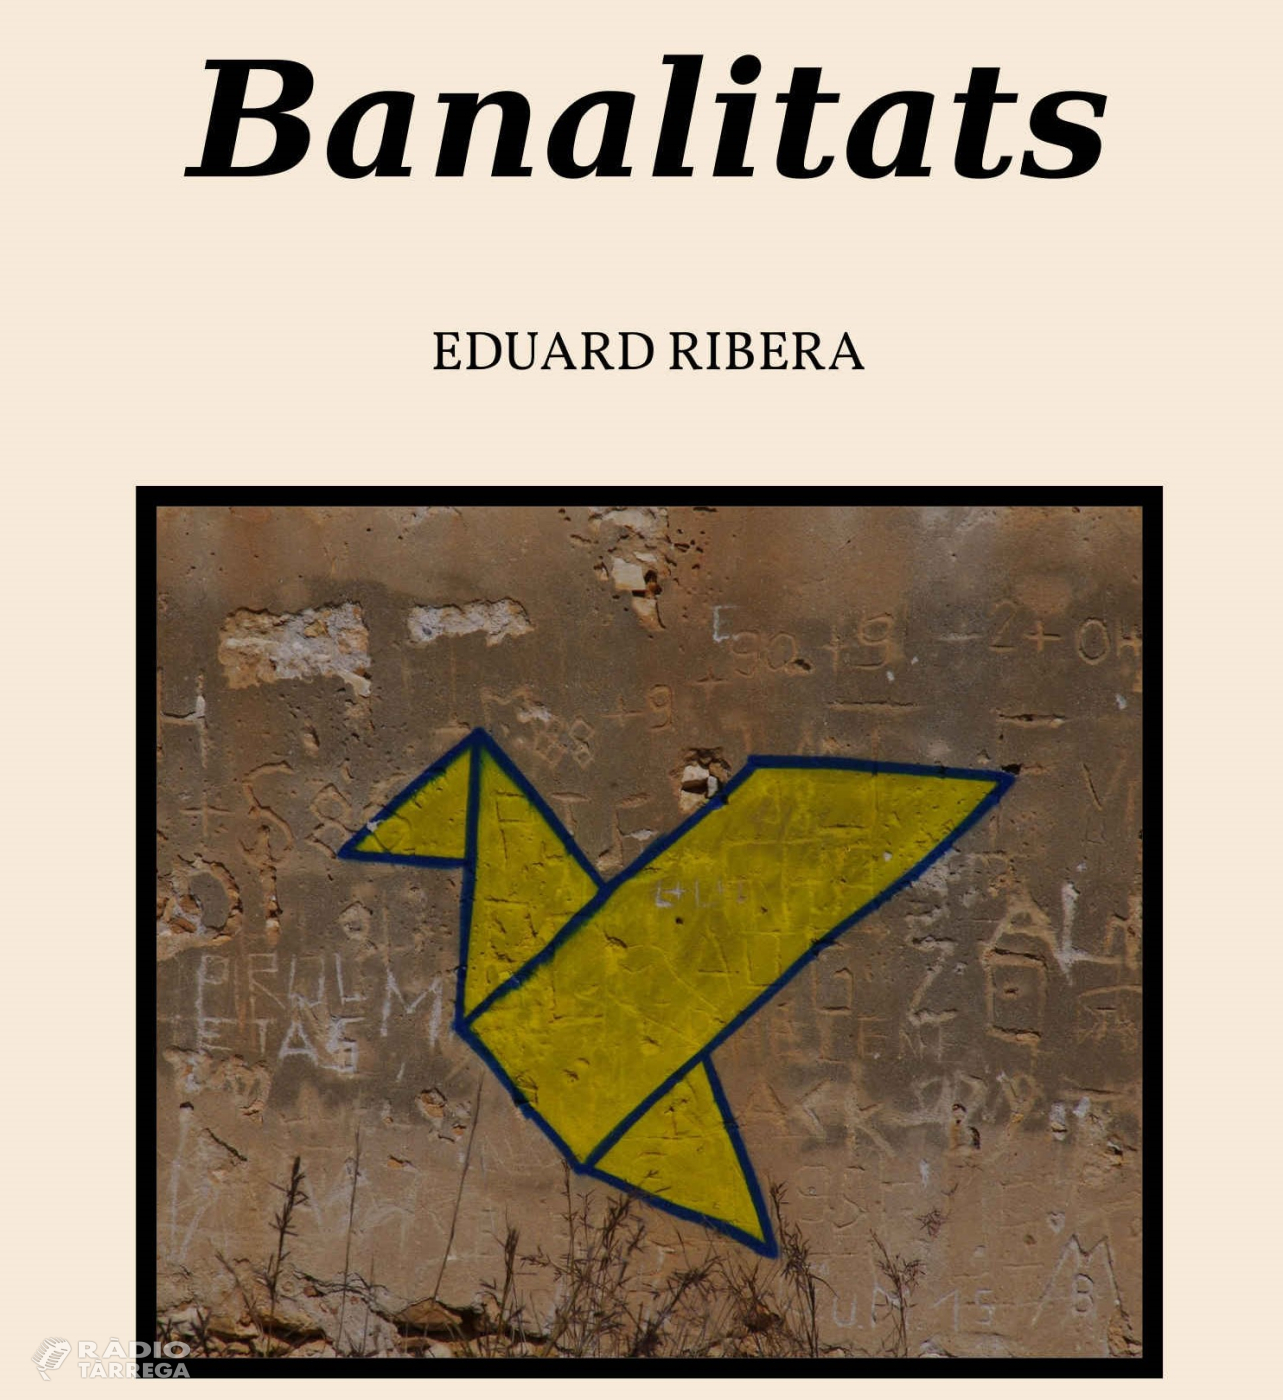 Eduard Ribera publica un nou llibre titulat 'Banalitats'